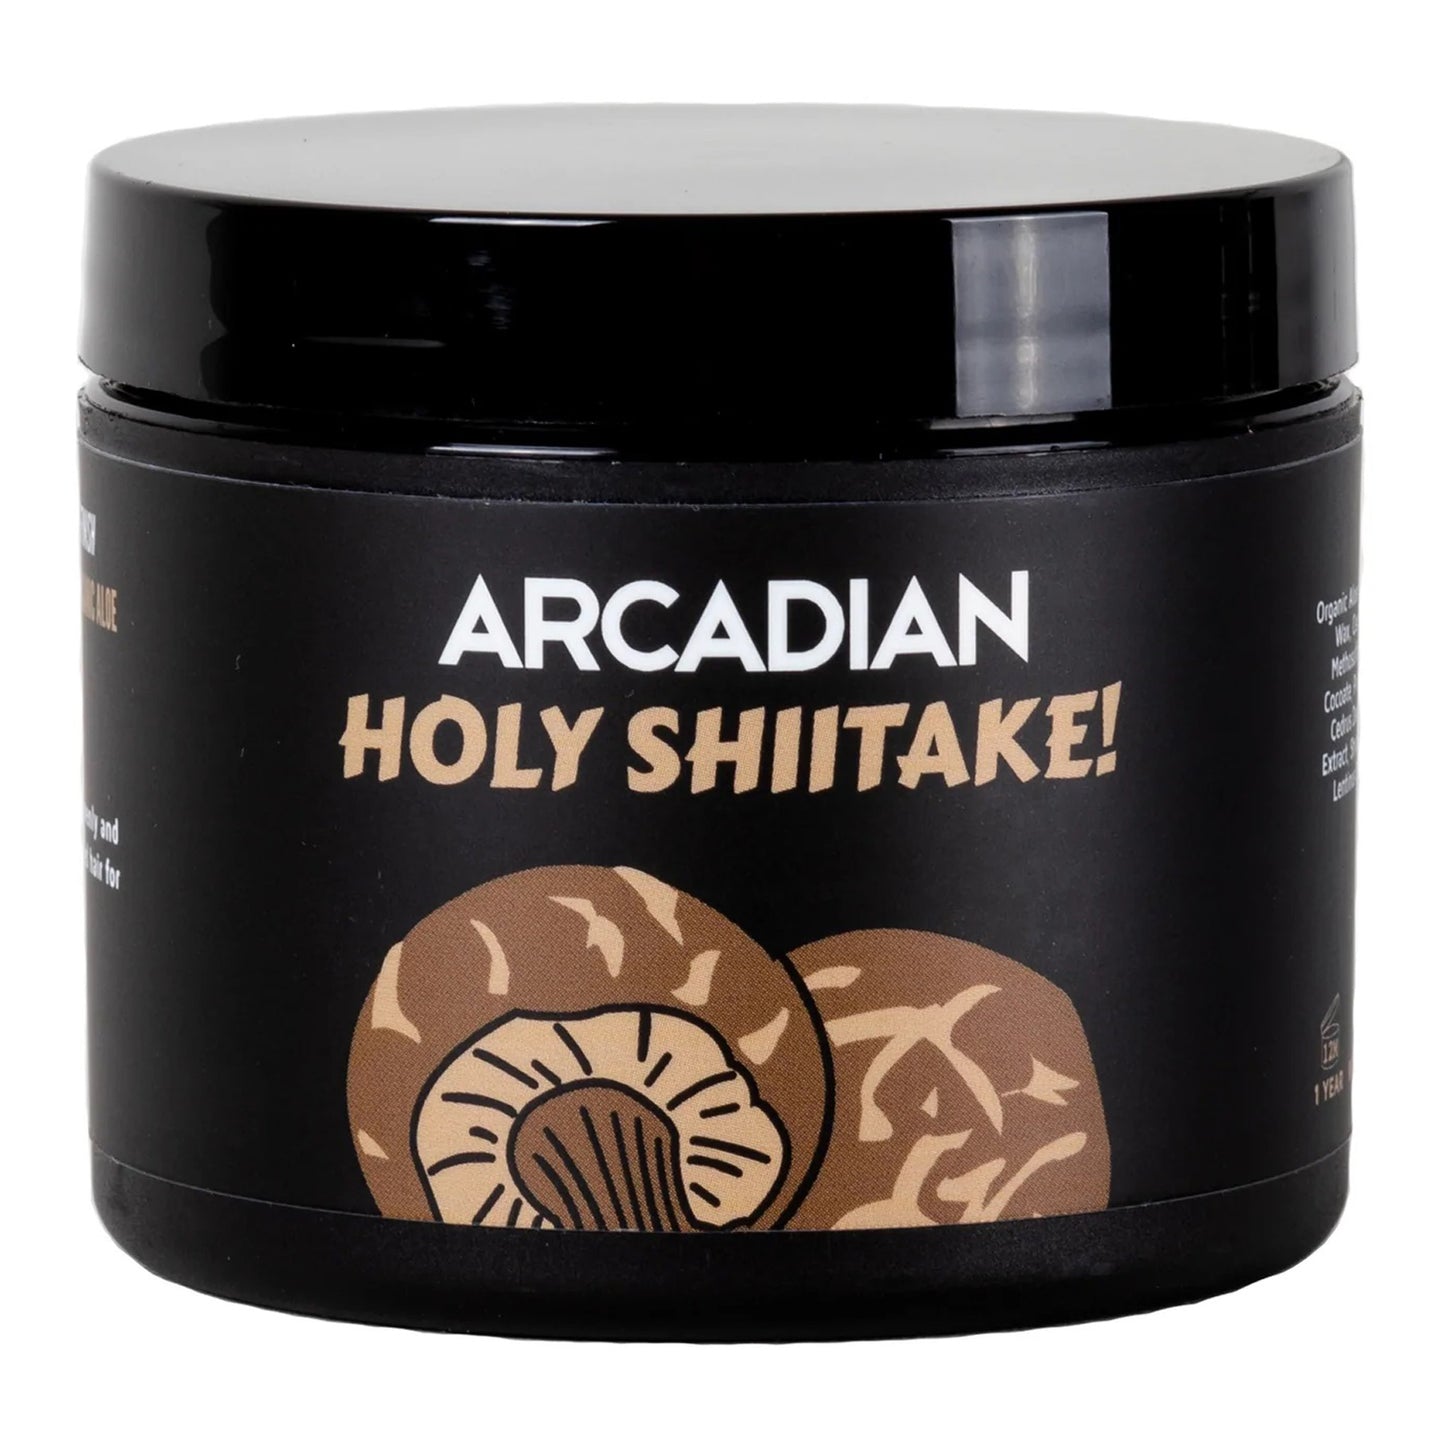 Holy Shiitake Arcadian